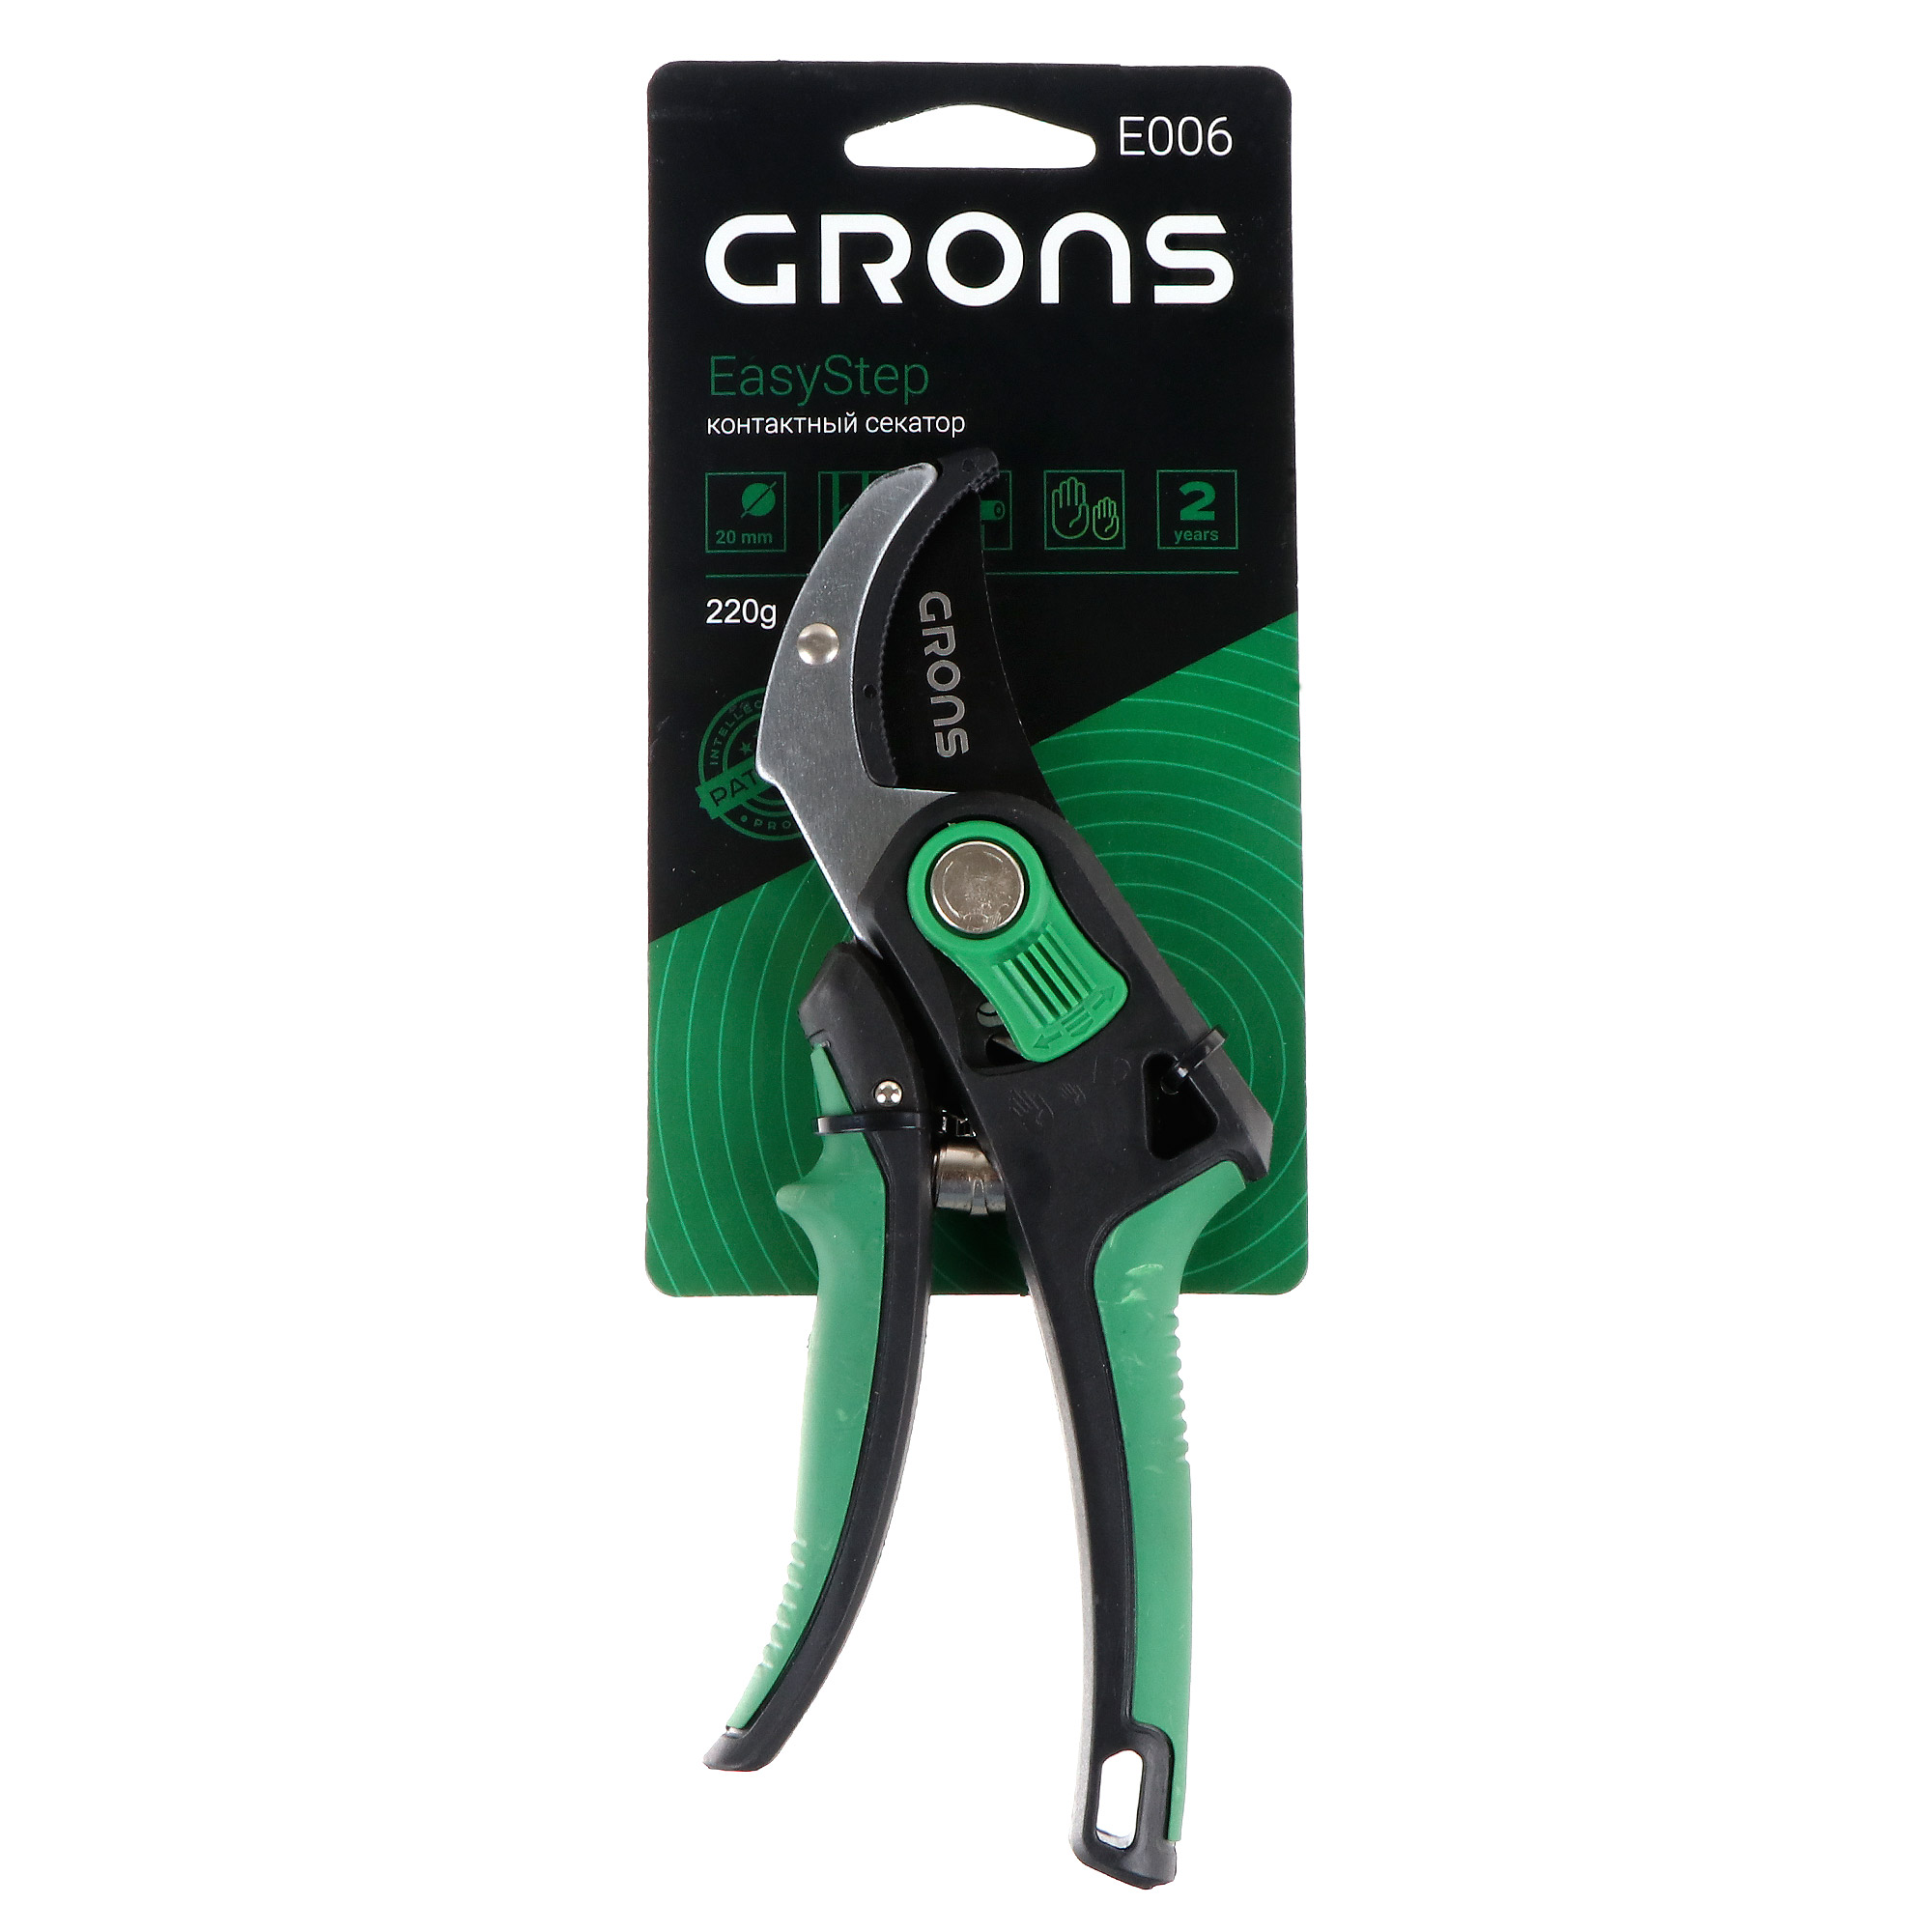 Секатор контактный Лама торф easystep grons E006 пластик/сталь ножницы для травы handlecut лама торф grons